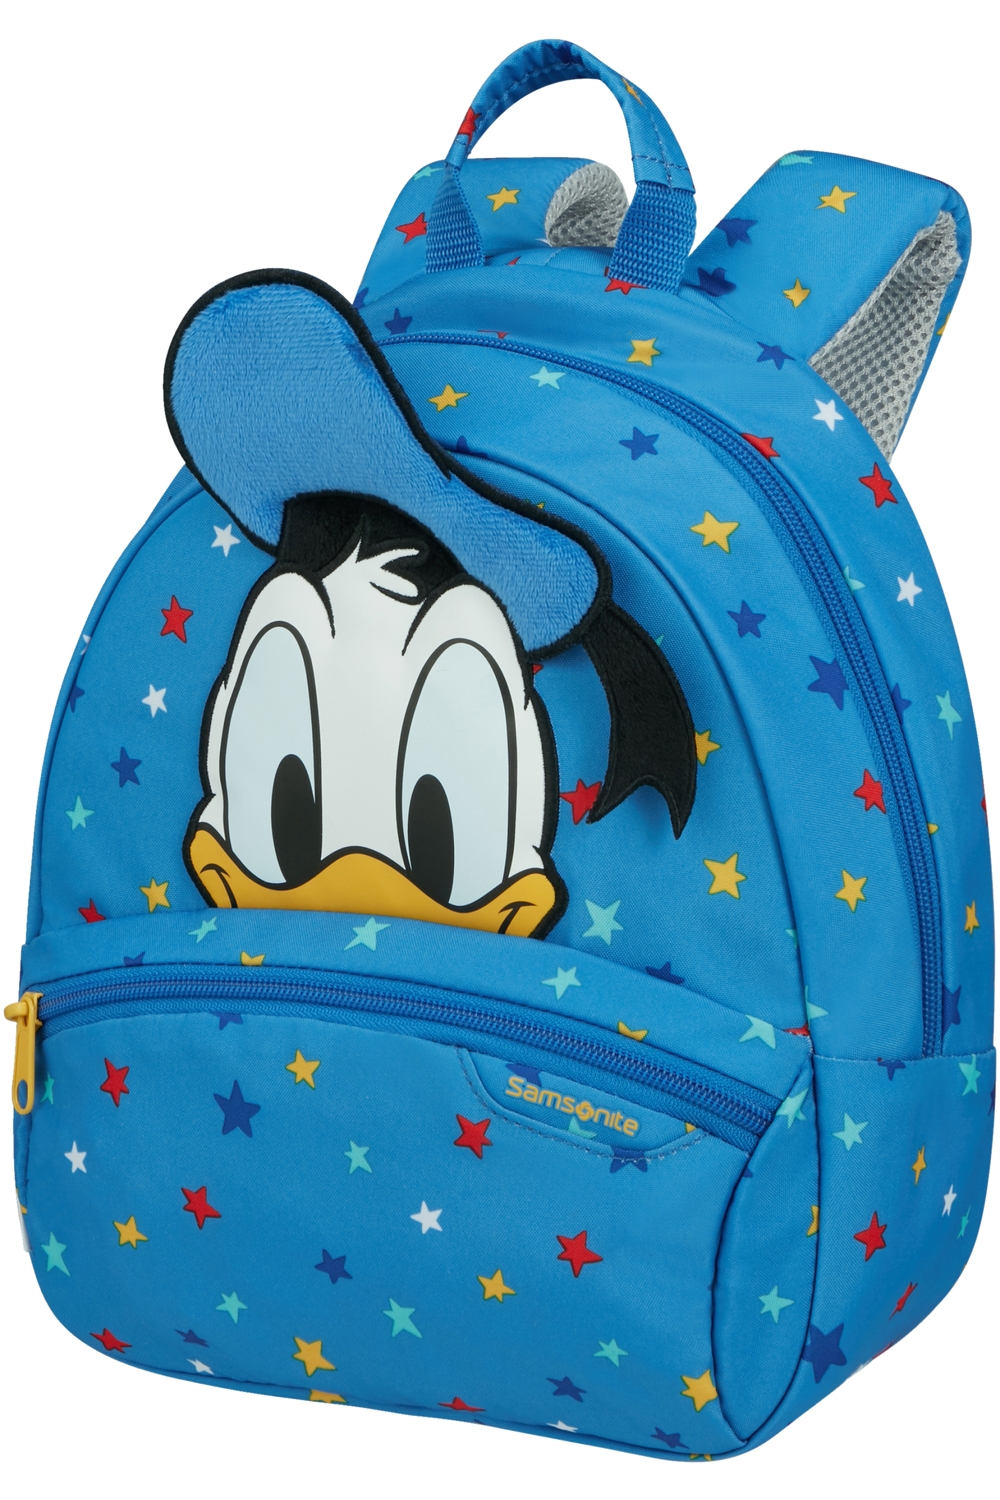 SAMSONITE Dětský batoh Disney Ultimate 2.0 Donald Stars, 24 x 13 x 28 (140111/9549)